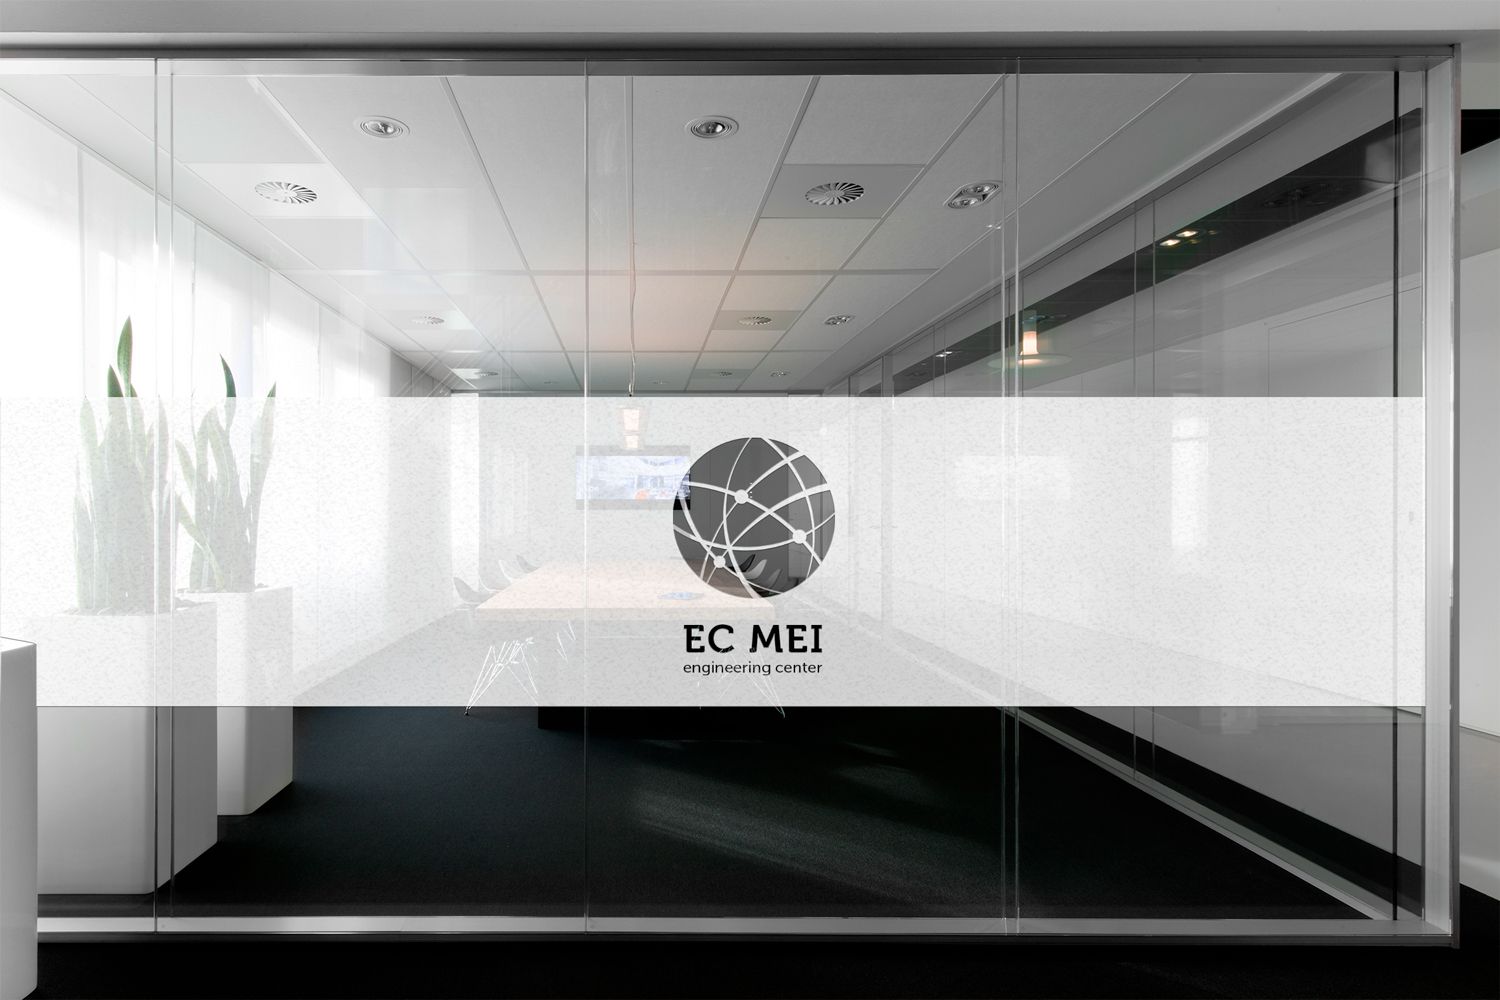 Логотип для ИЦ МЭИ / EC MEI (Инжиниринговый Центр МЭИ) - дизайнер BARS_PROD